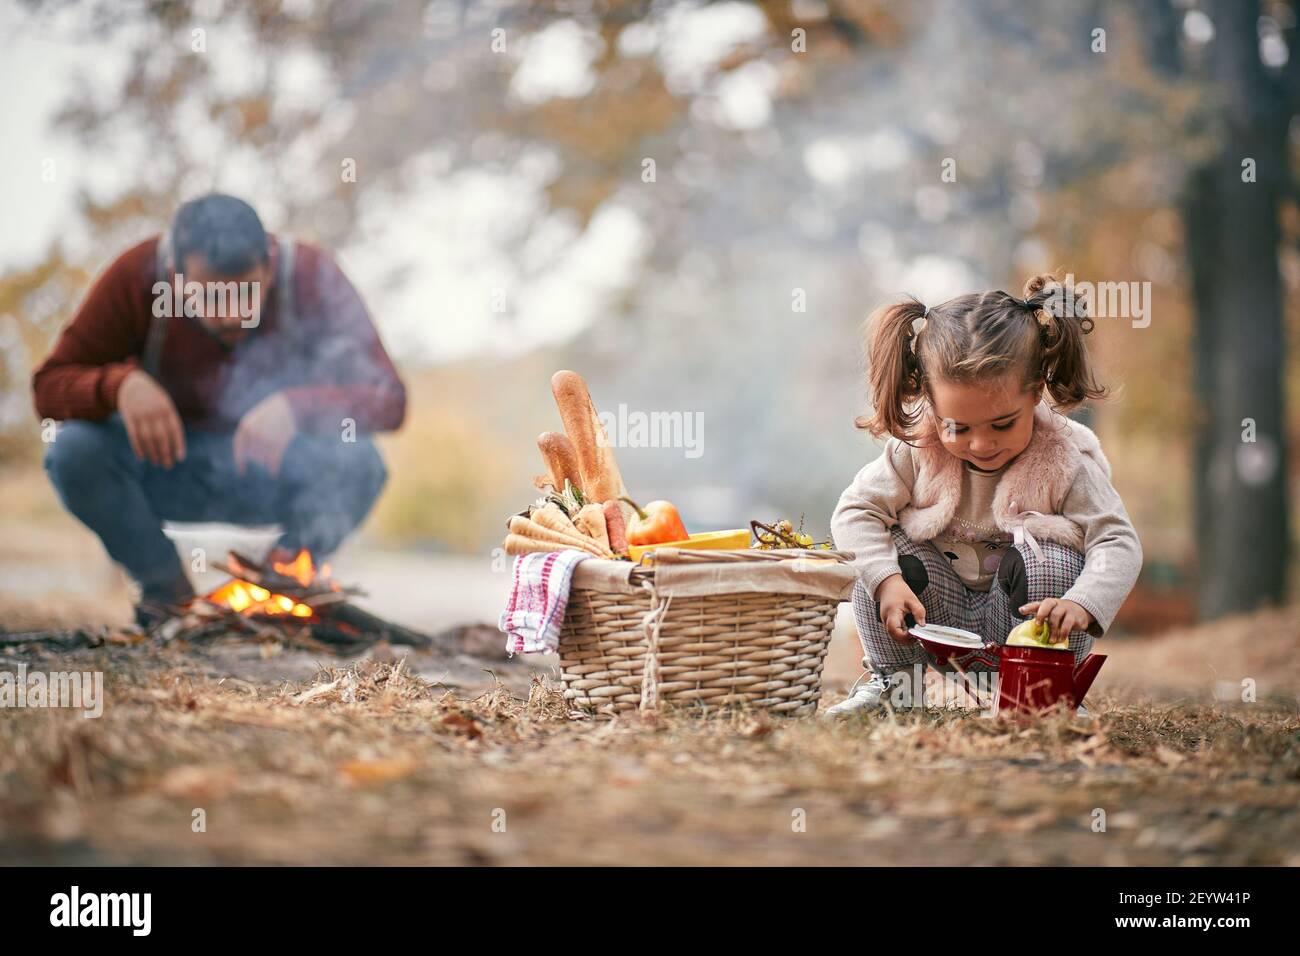 Kleines Mädchen auf Picknick spielen, während Vater das Feuer vorbereitet Stockfoto